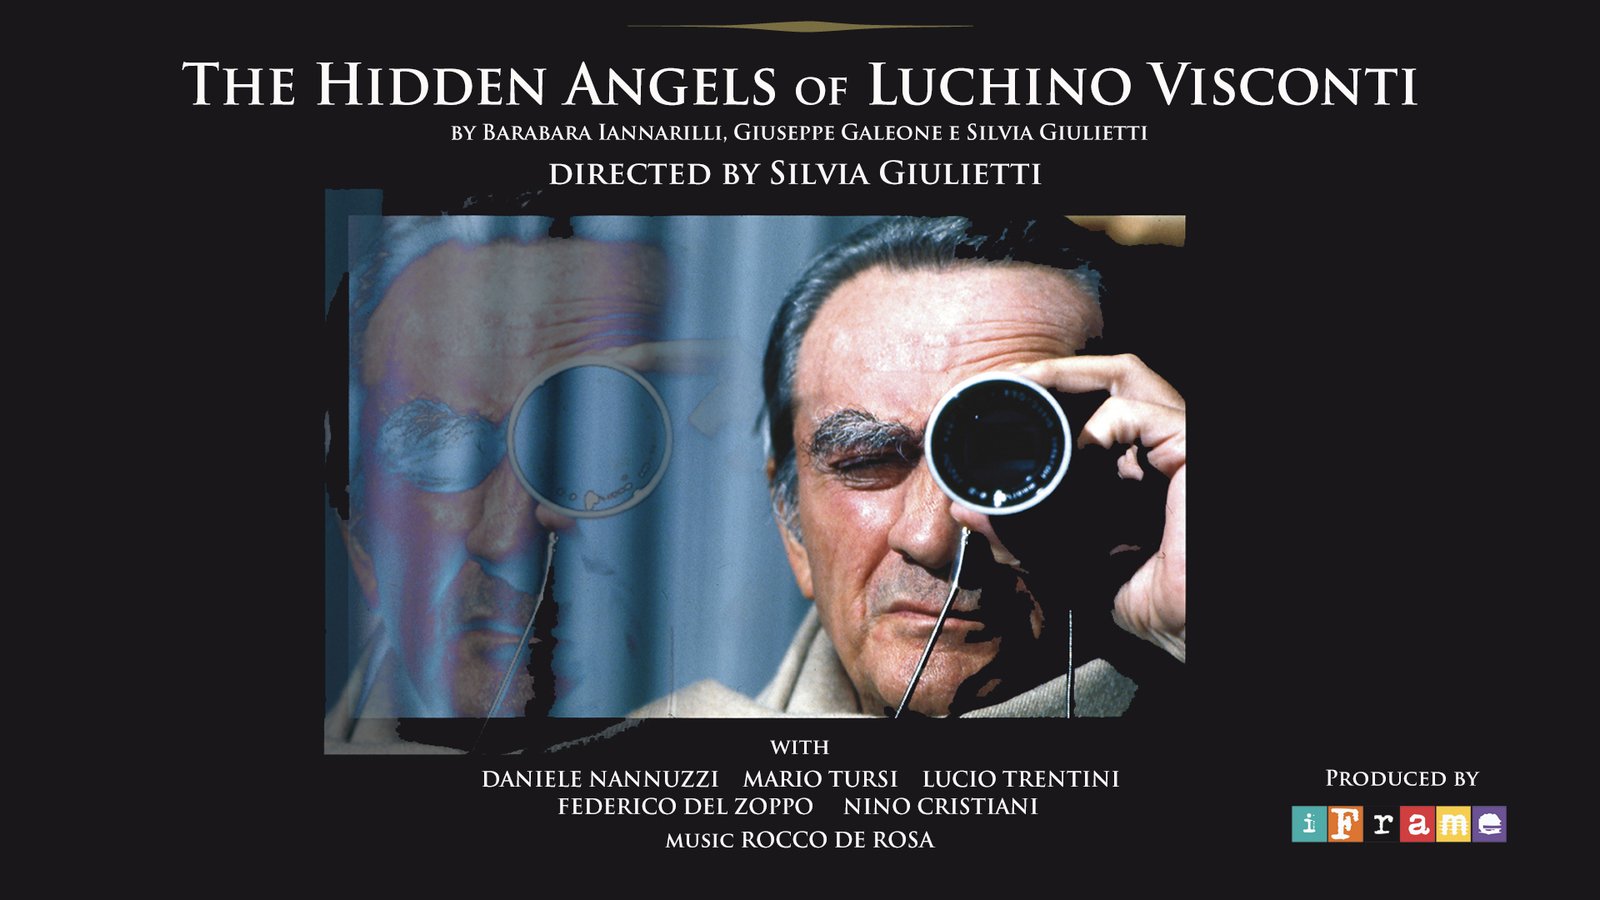 The Hidden Angles of Luchino Visconti - Gli angeli nascosti di Luchino Visconti